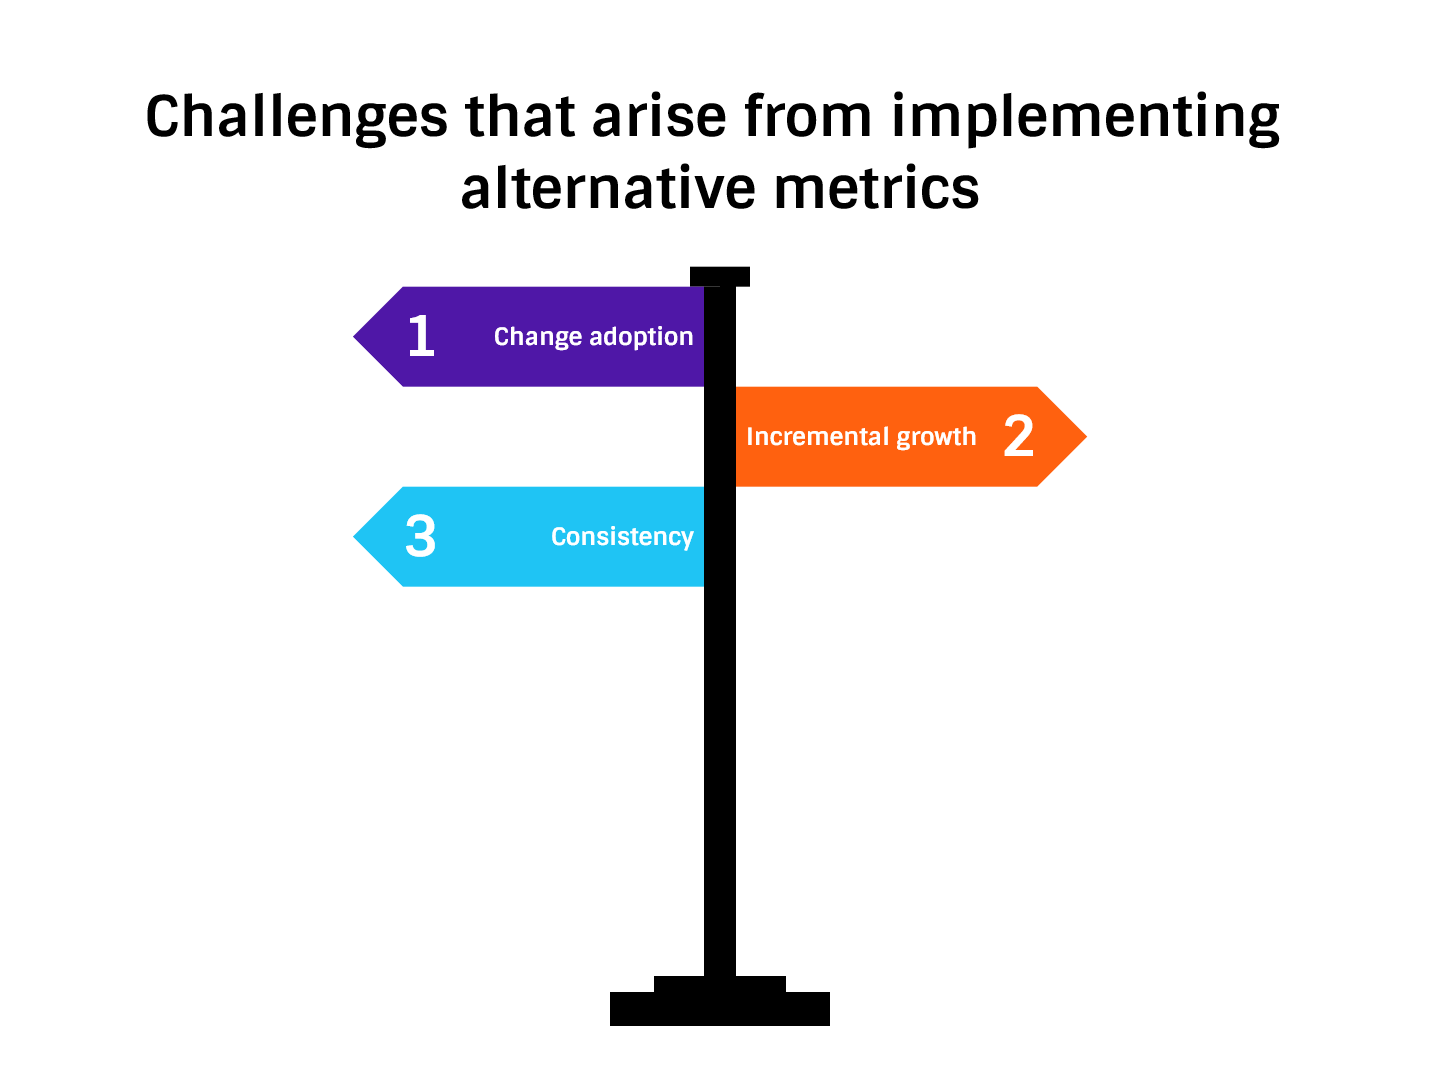 alternative metrics challenges